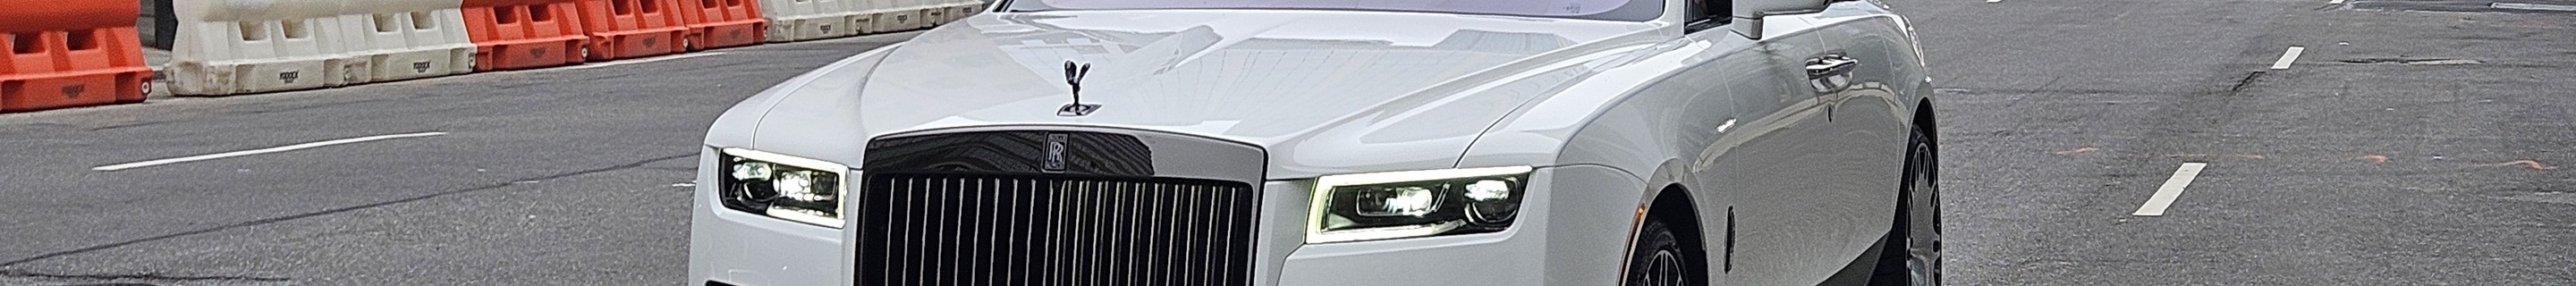 Rolls-Royce Brabus 700 Ghost EWB